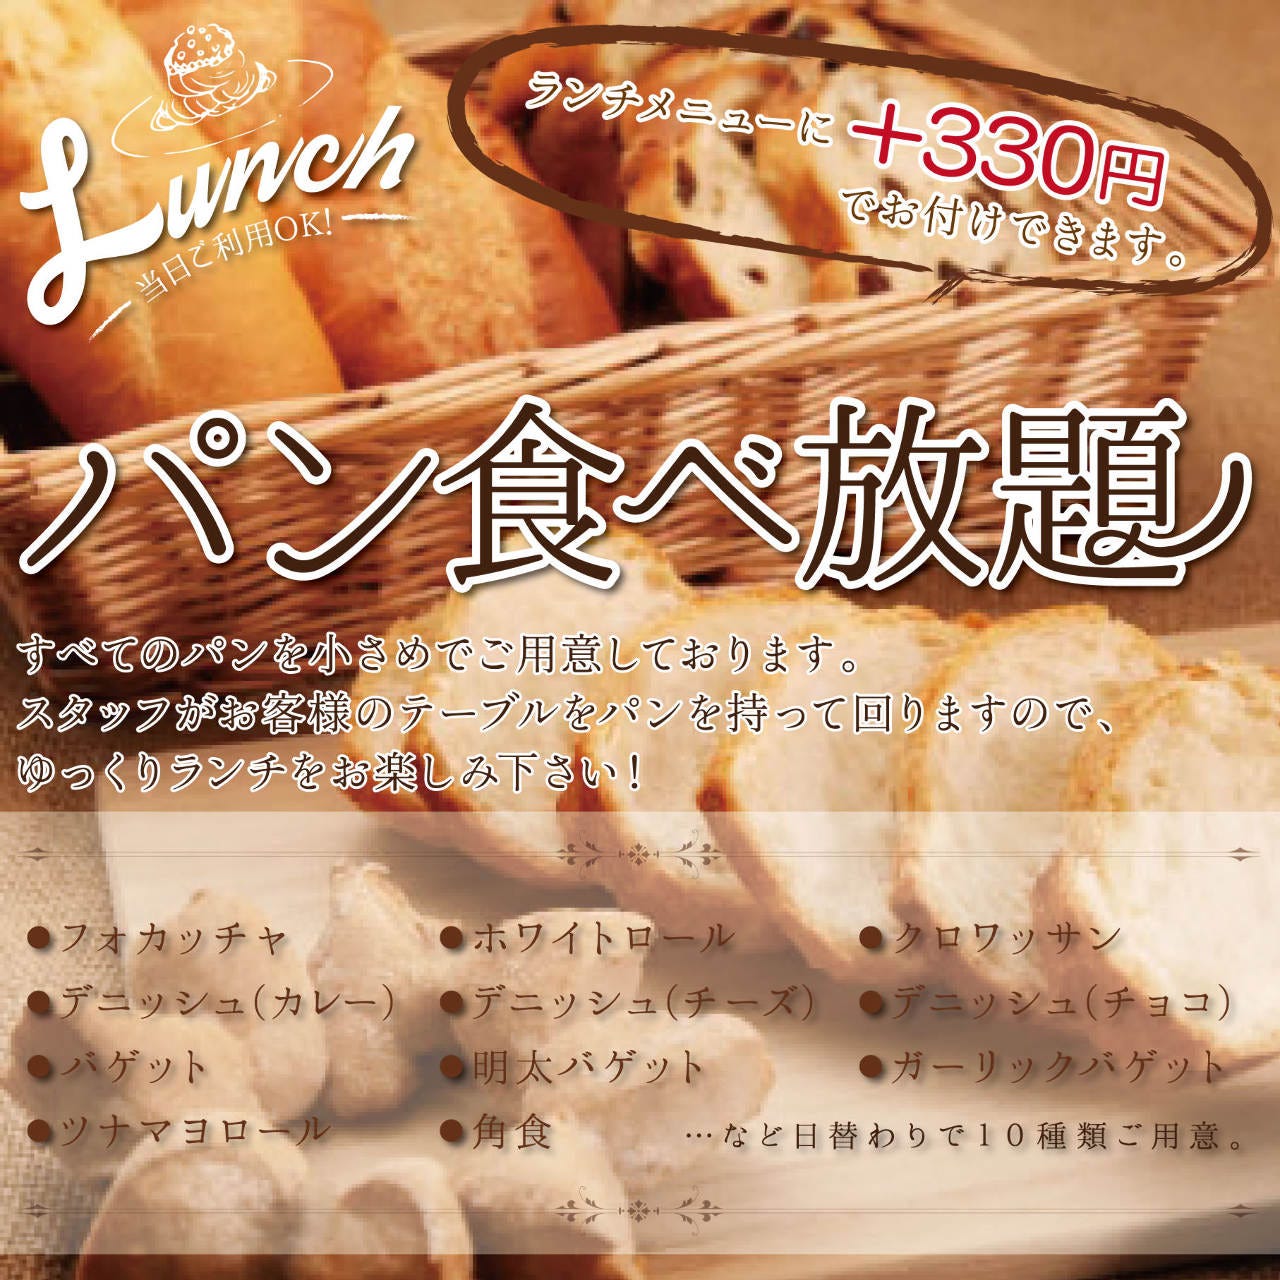 21年 最新グルメ 三宮 元町にあるパン食べ放題のお店 レストラン カフェ 居酒屋のネット予約 兵庫版